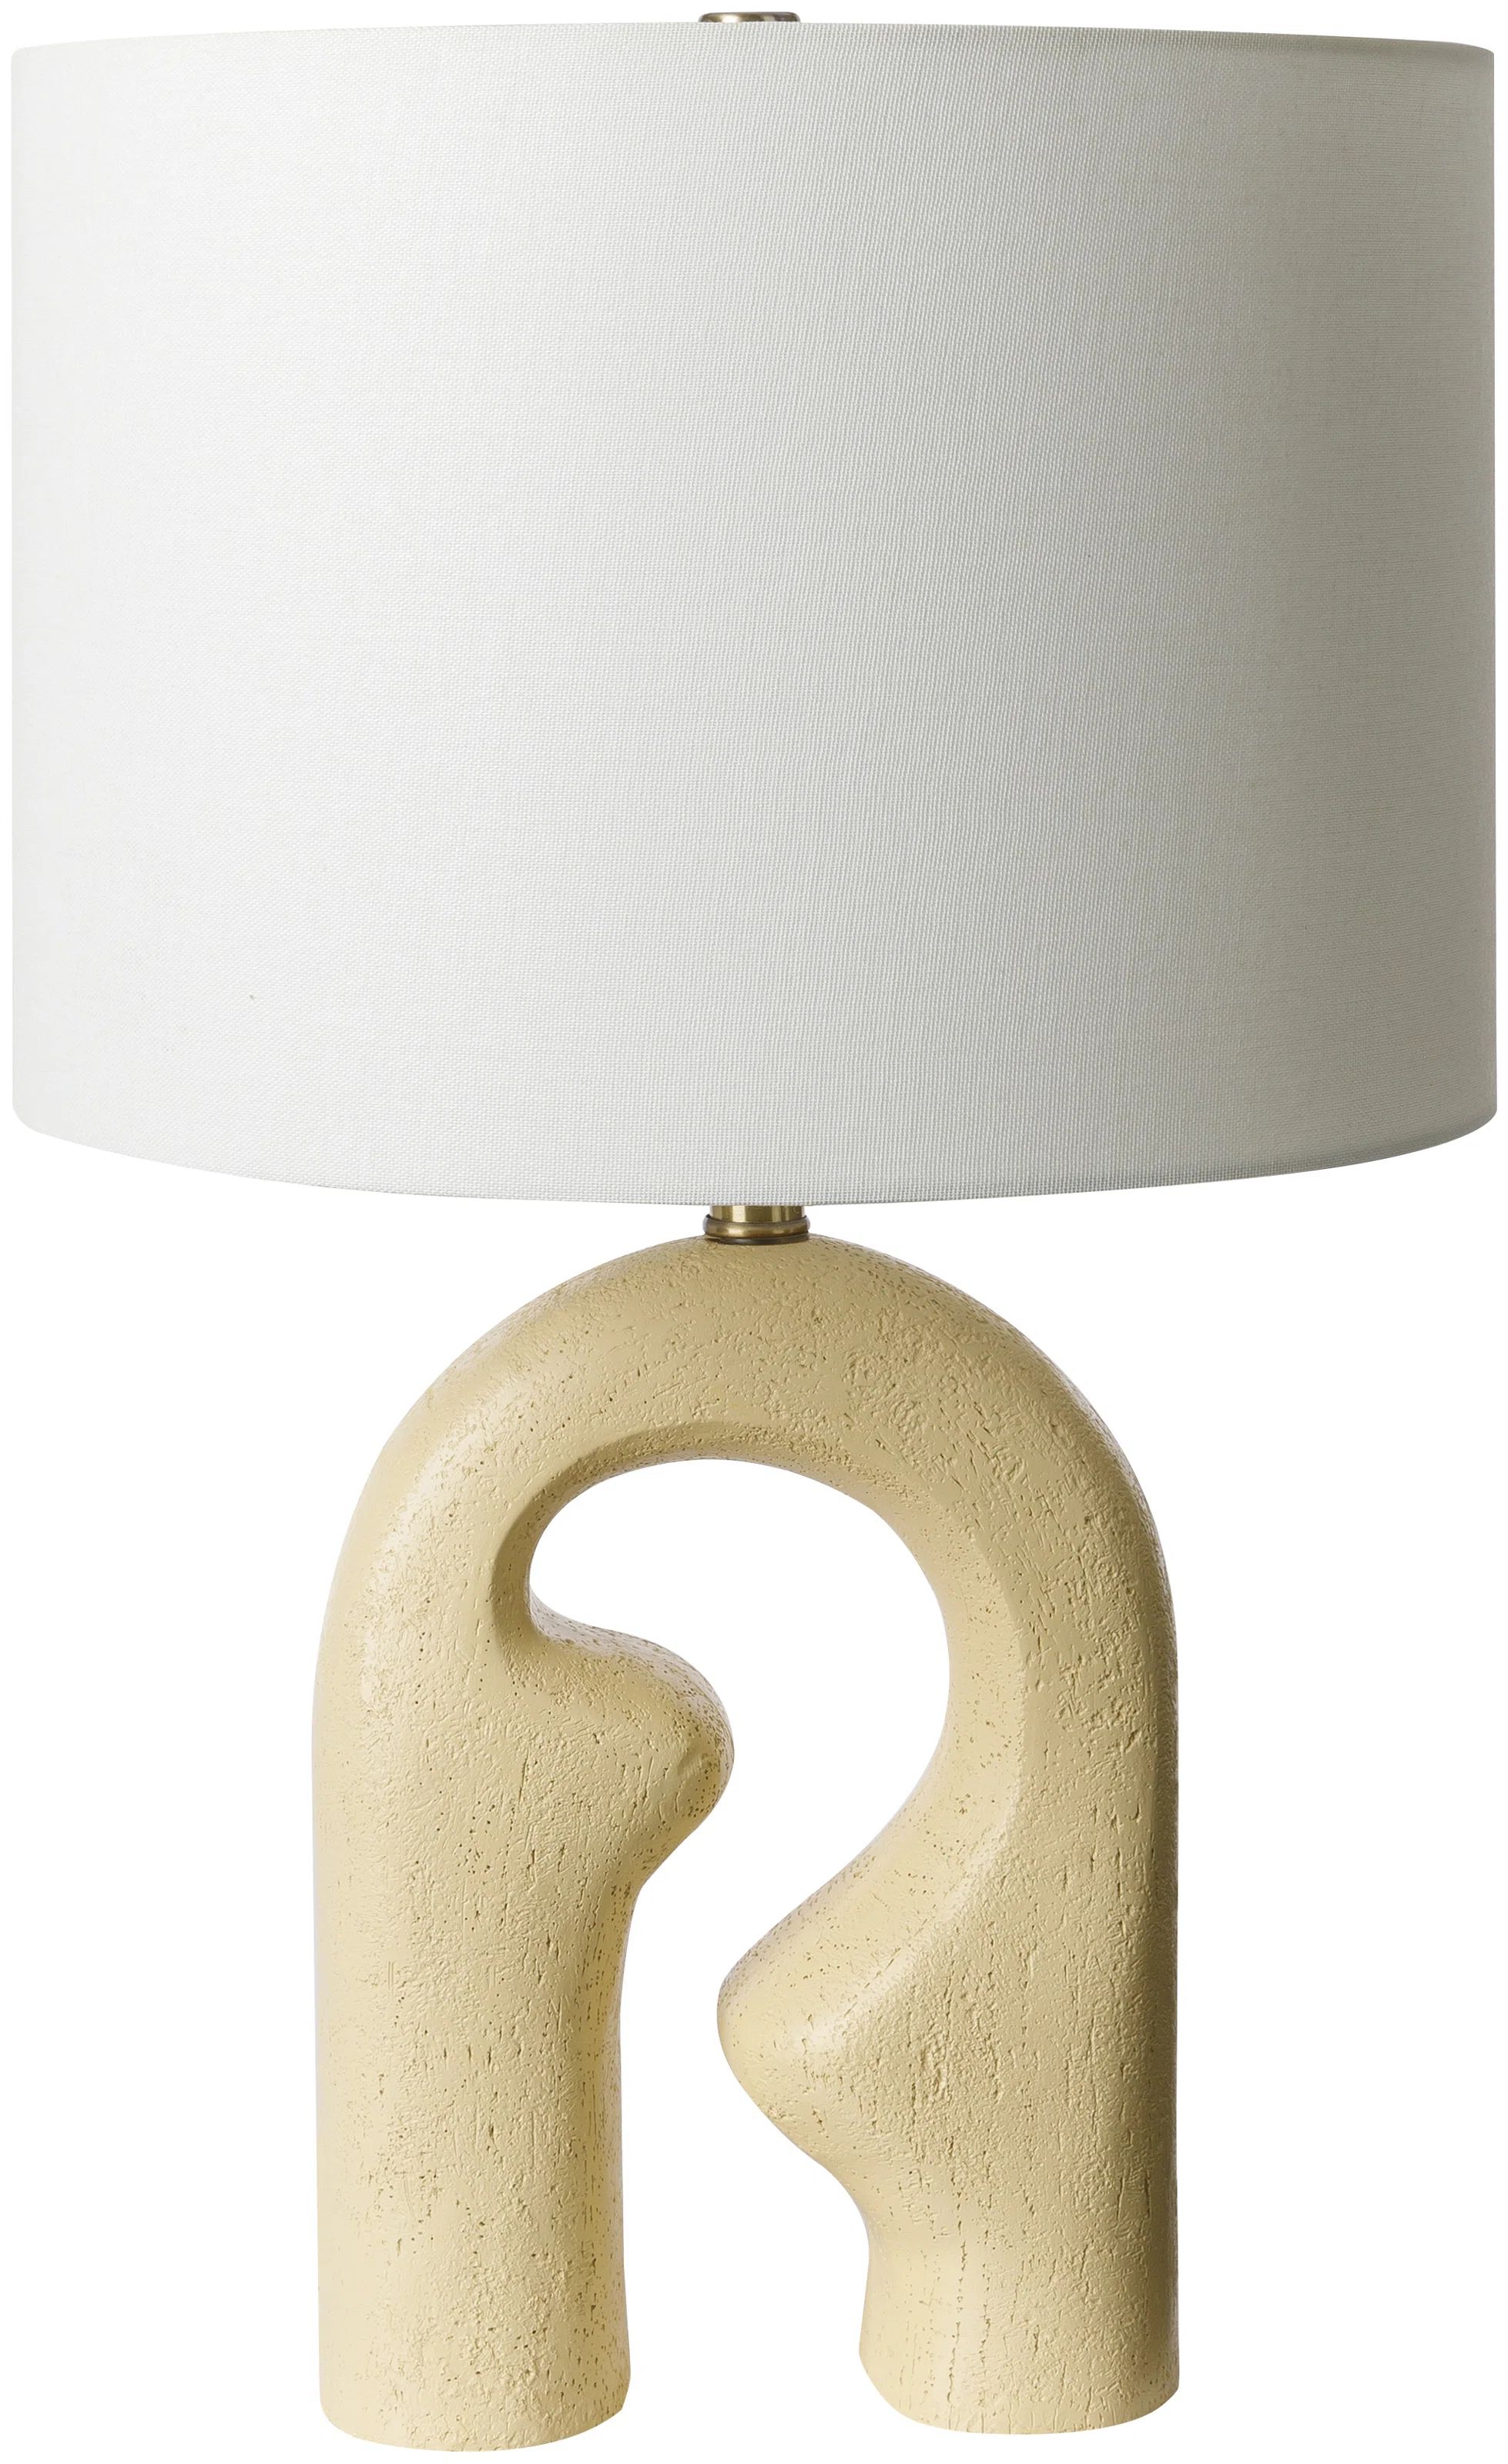 Dyanna Table Lamp | Wayfair Professional